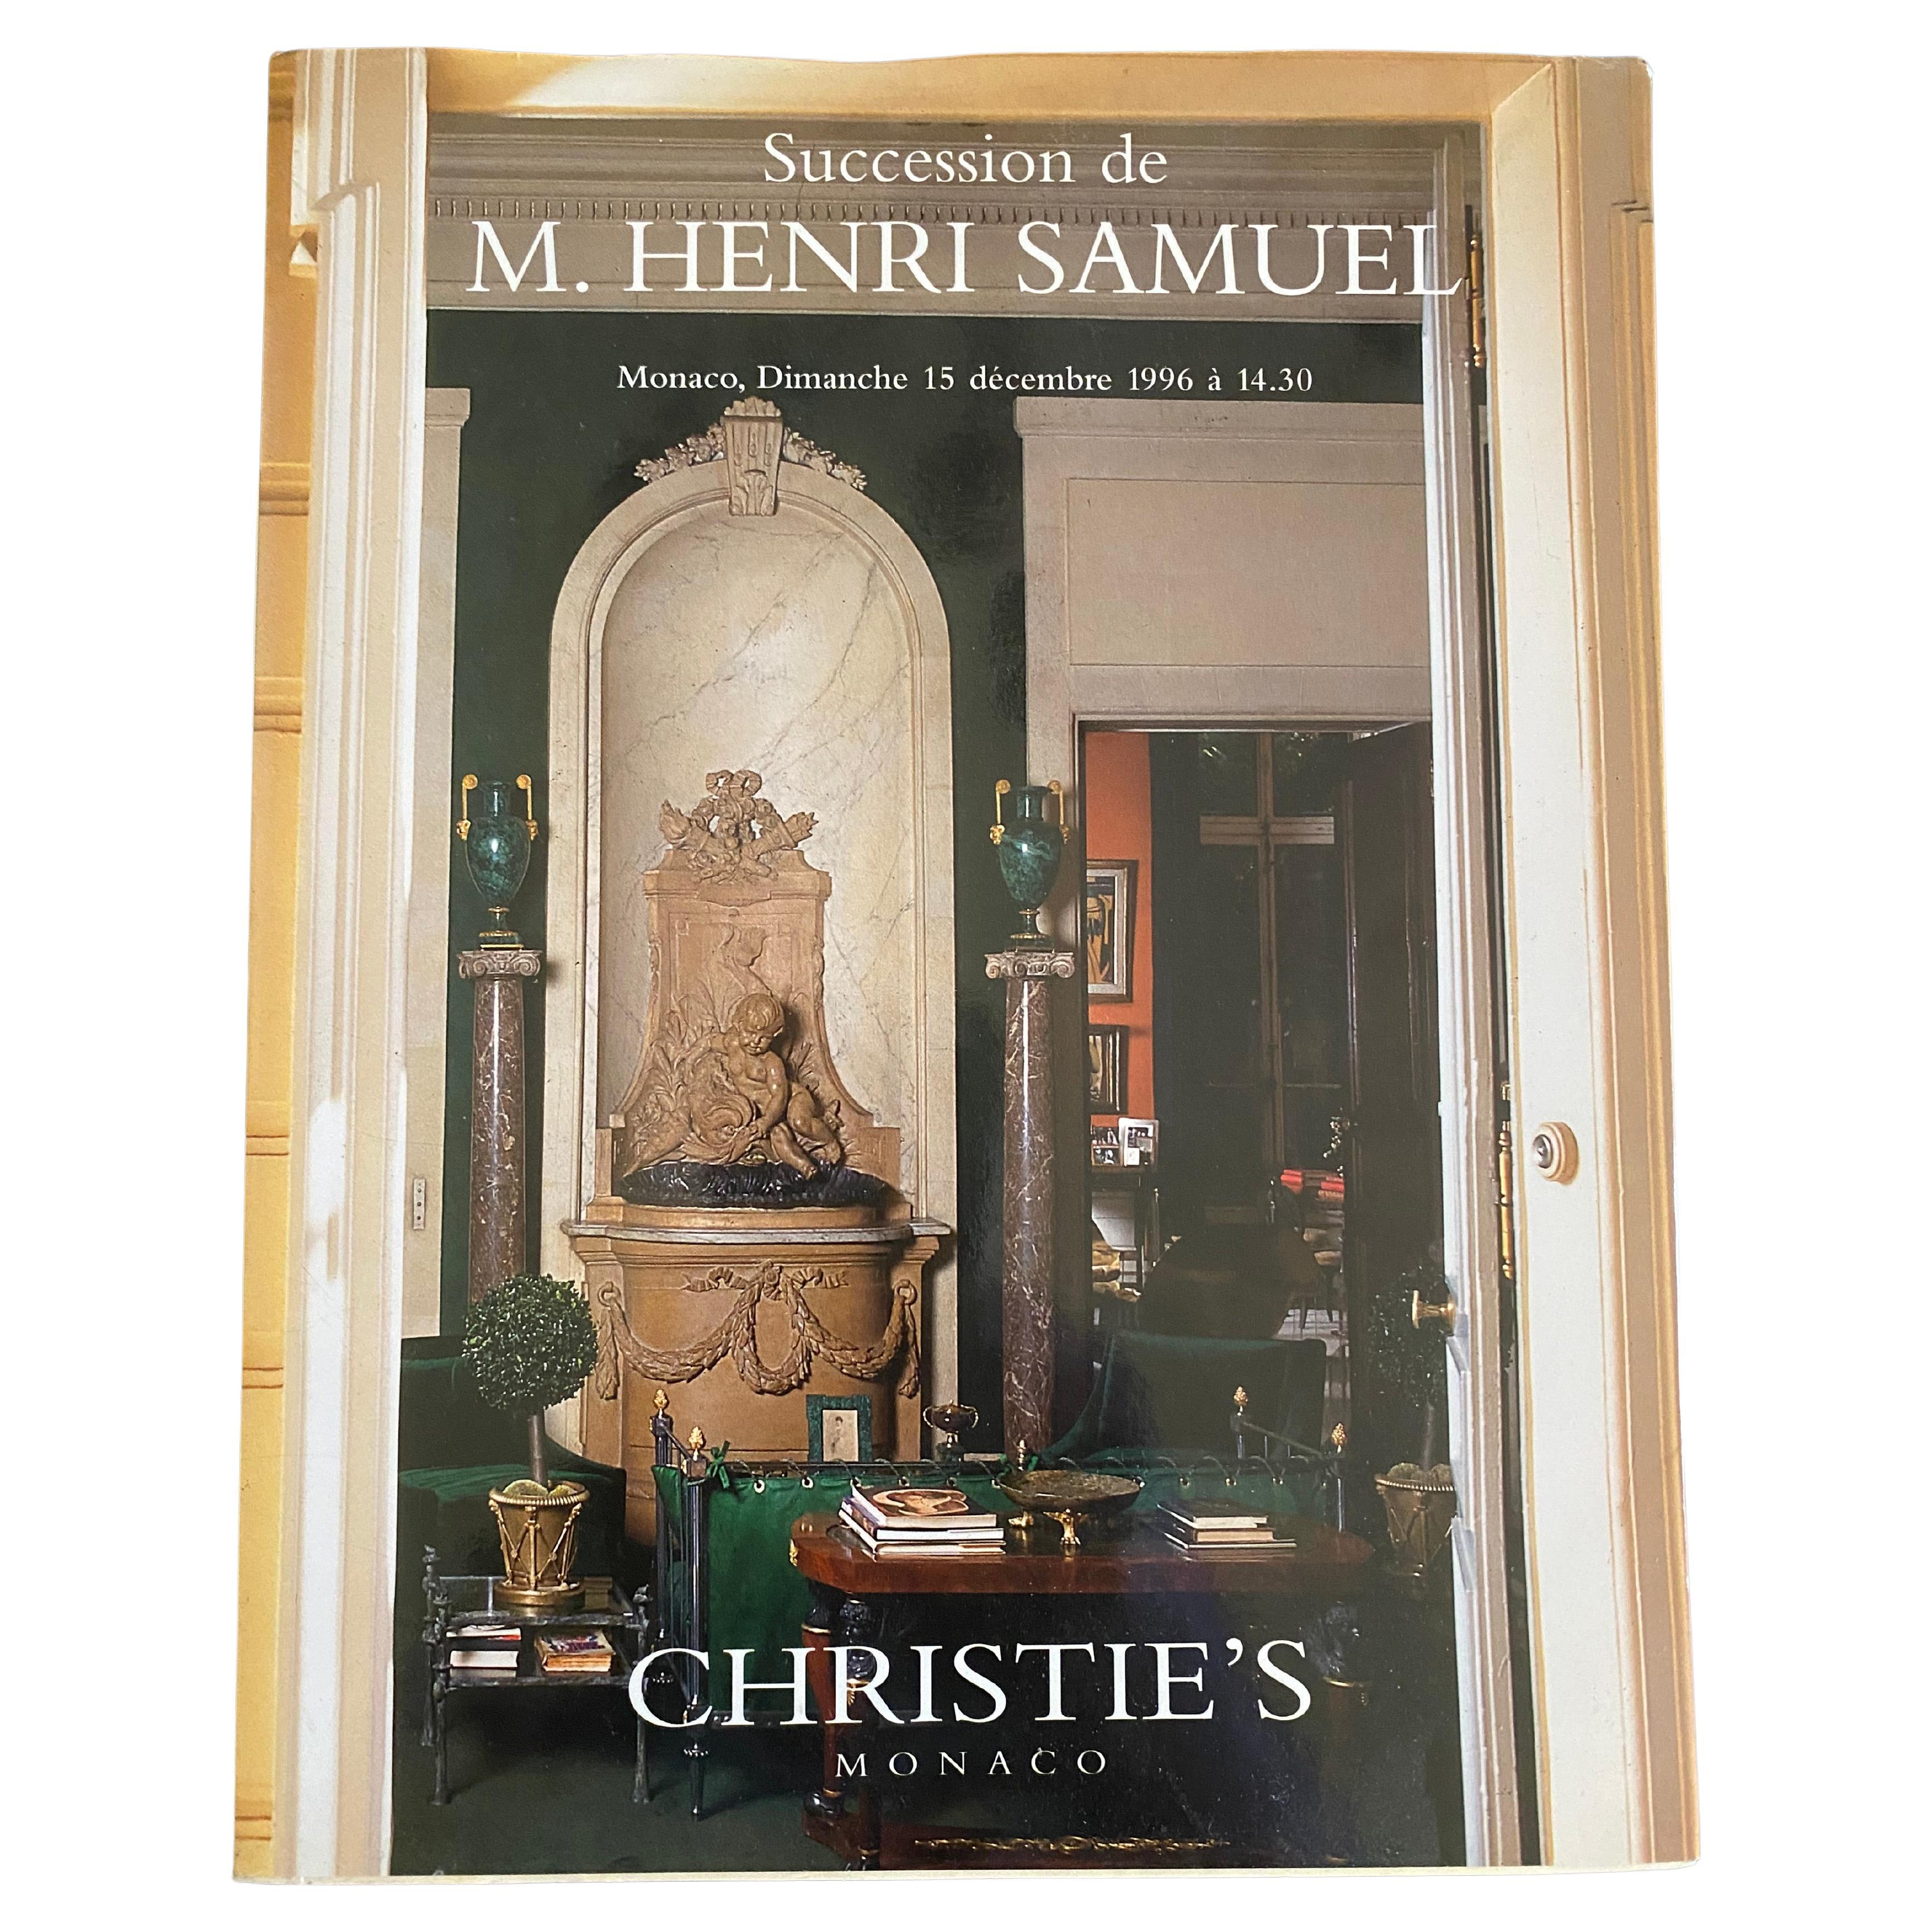 Christie's Monaco Succession de M. Henri Samuel December 15, 1996 For Sale